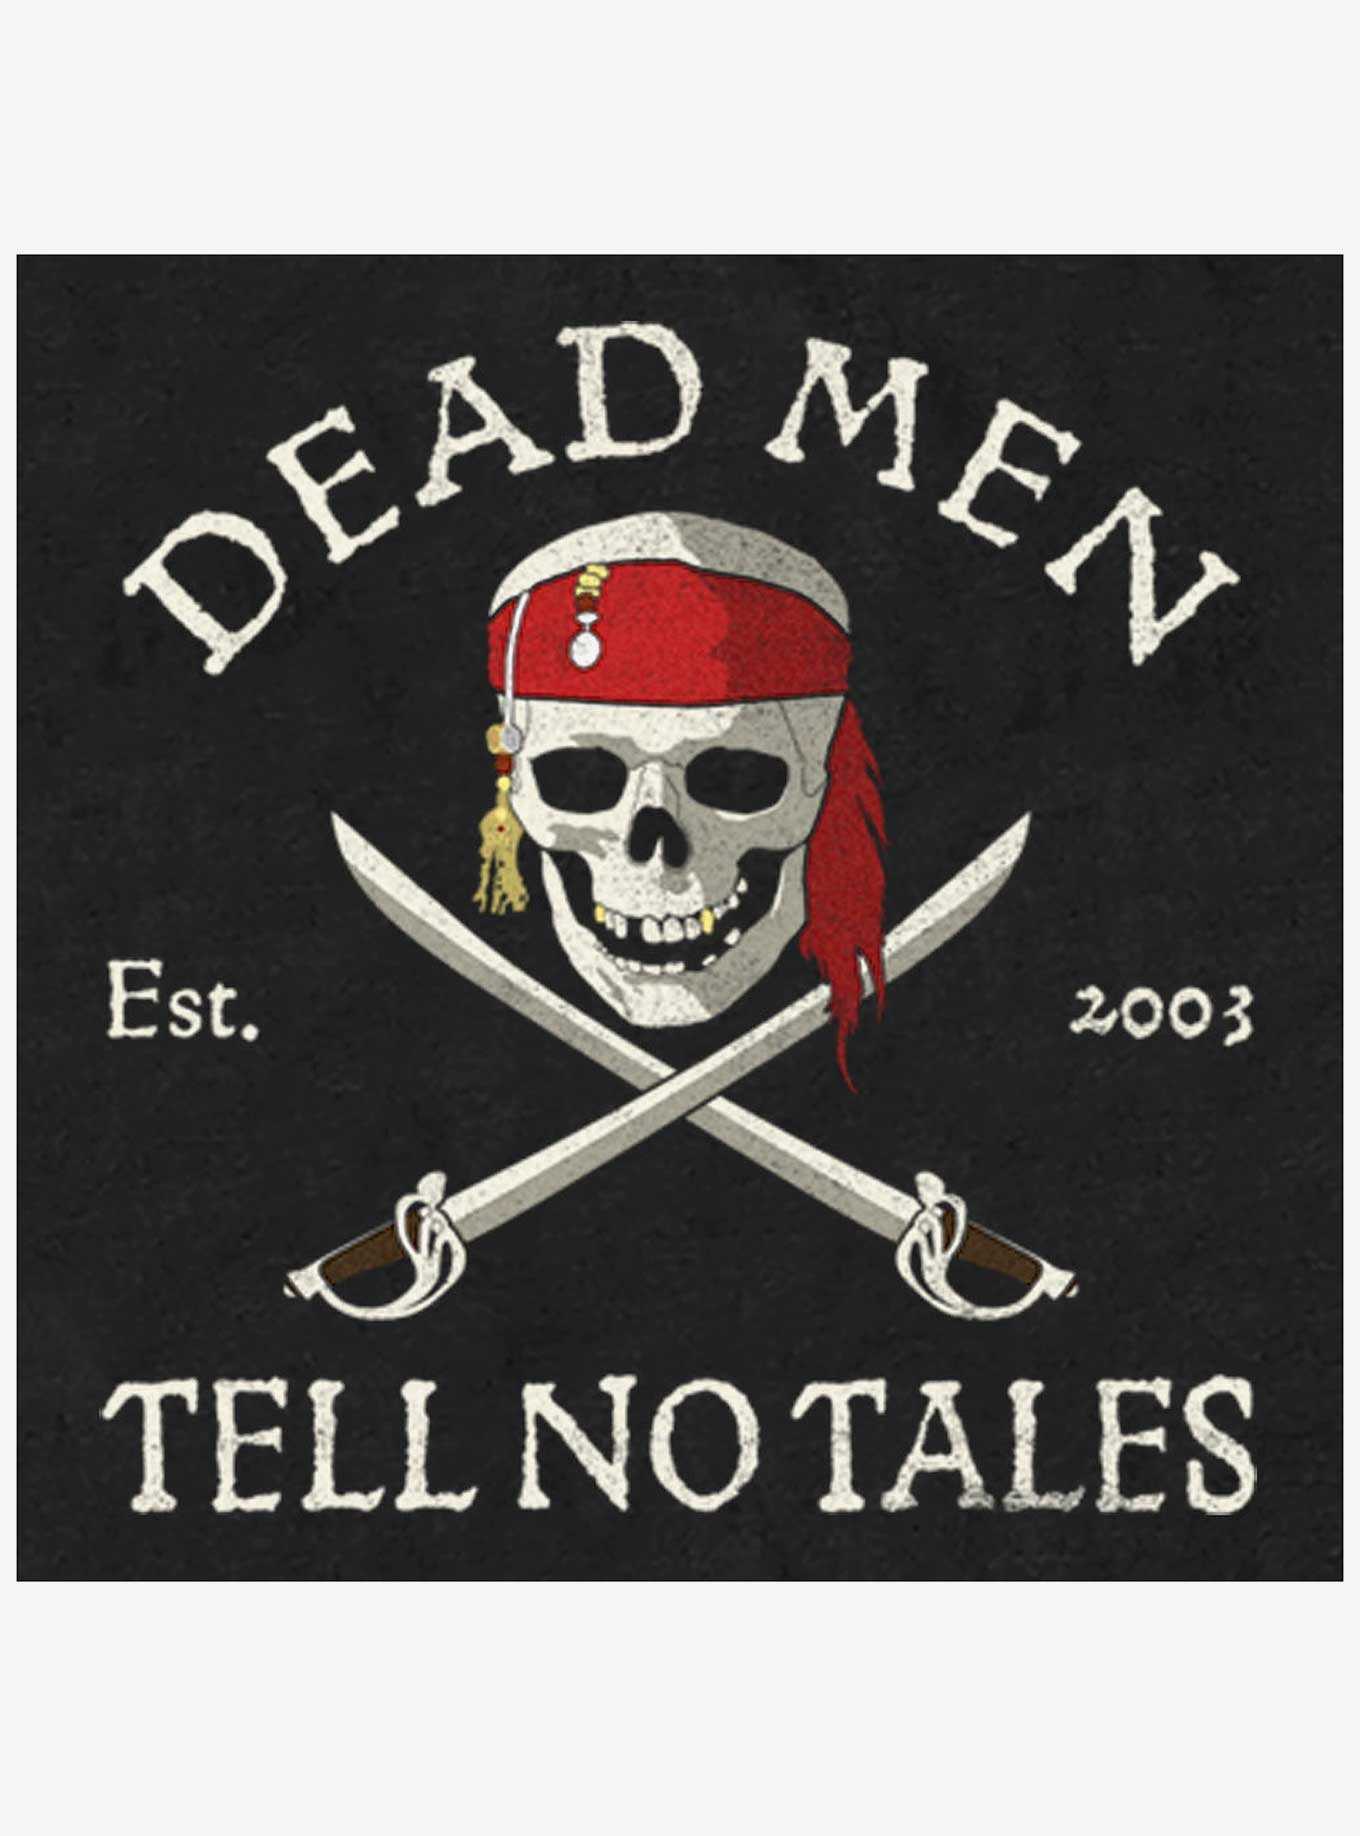 Disney Pirates of the Caribbean Dead Men Tell No Tales Big & Tall T-Shirt, , hi-res